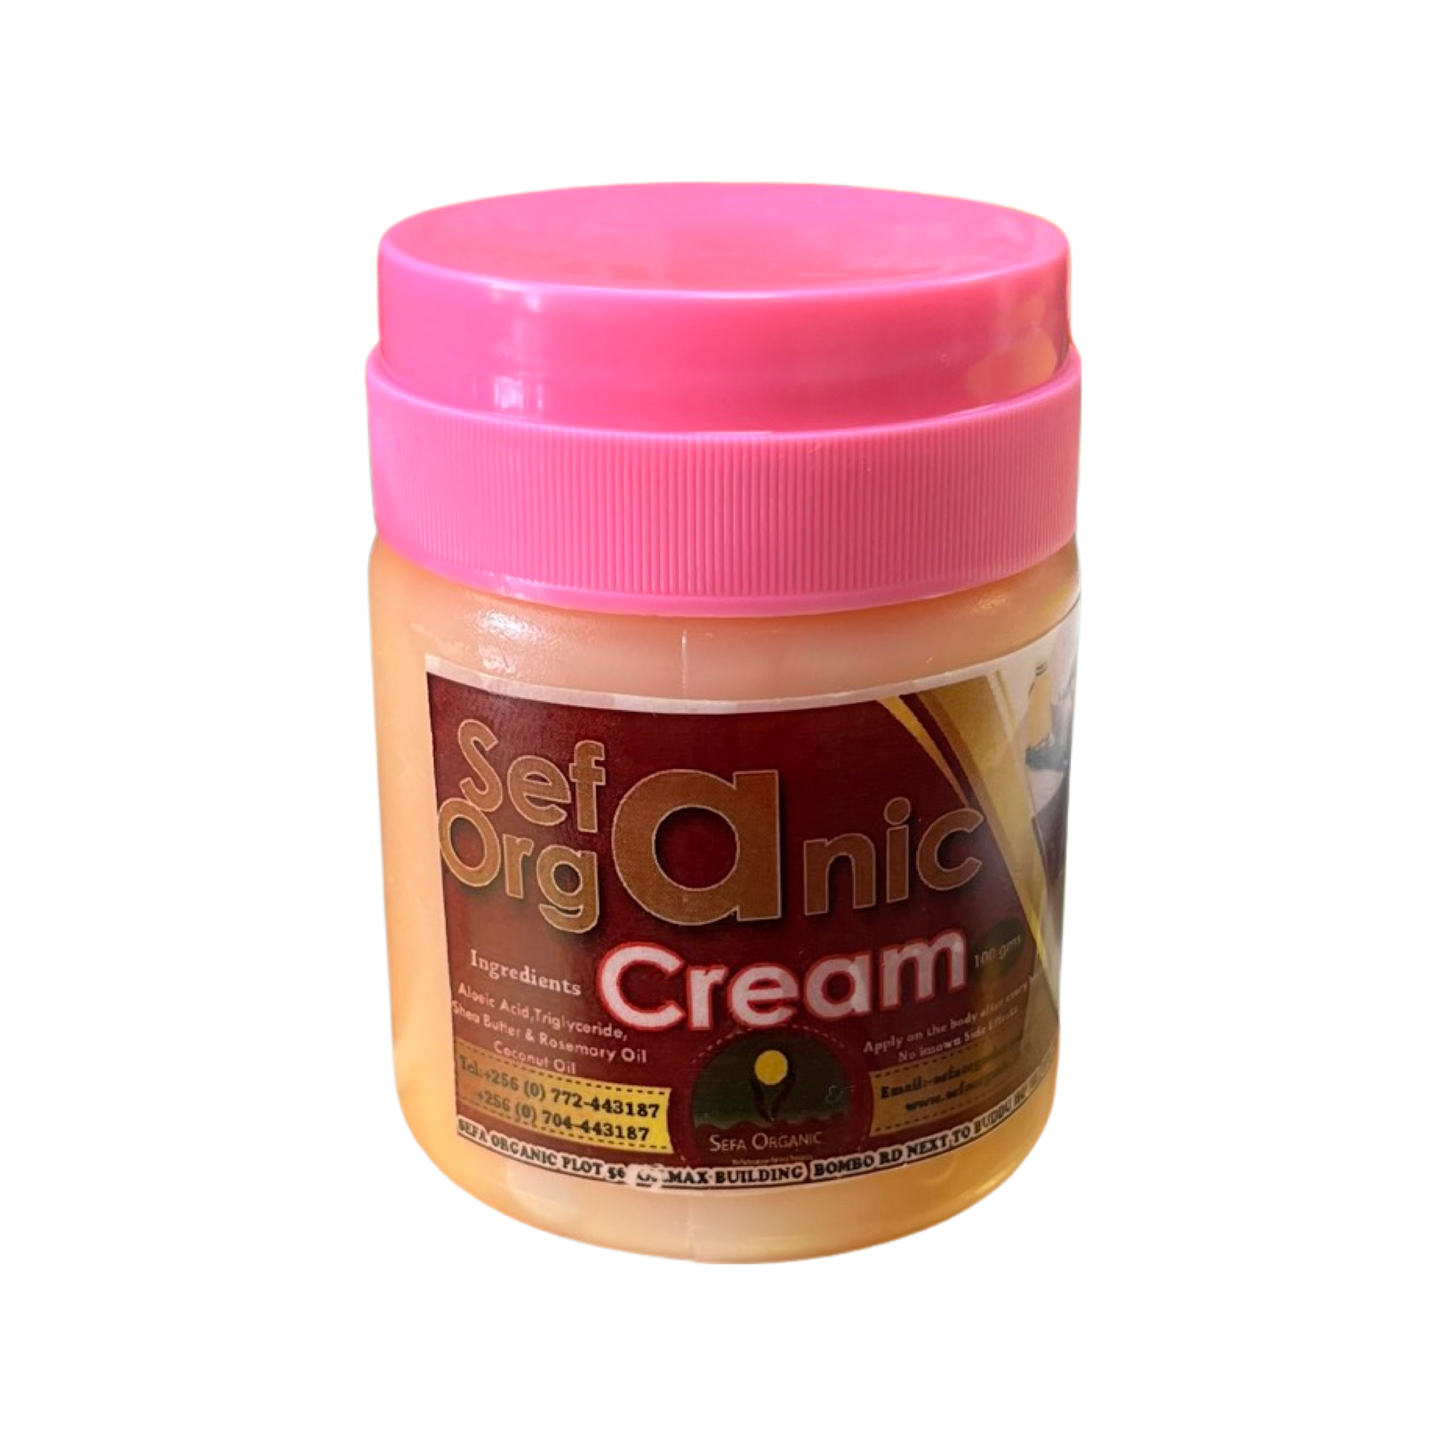 Sefa Organic cream